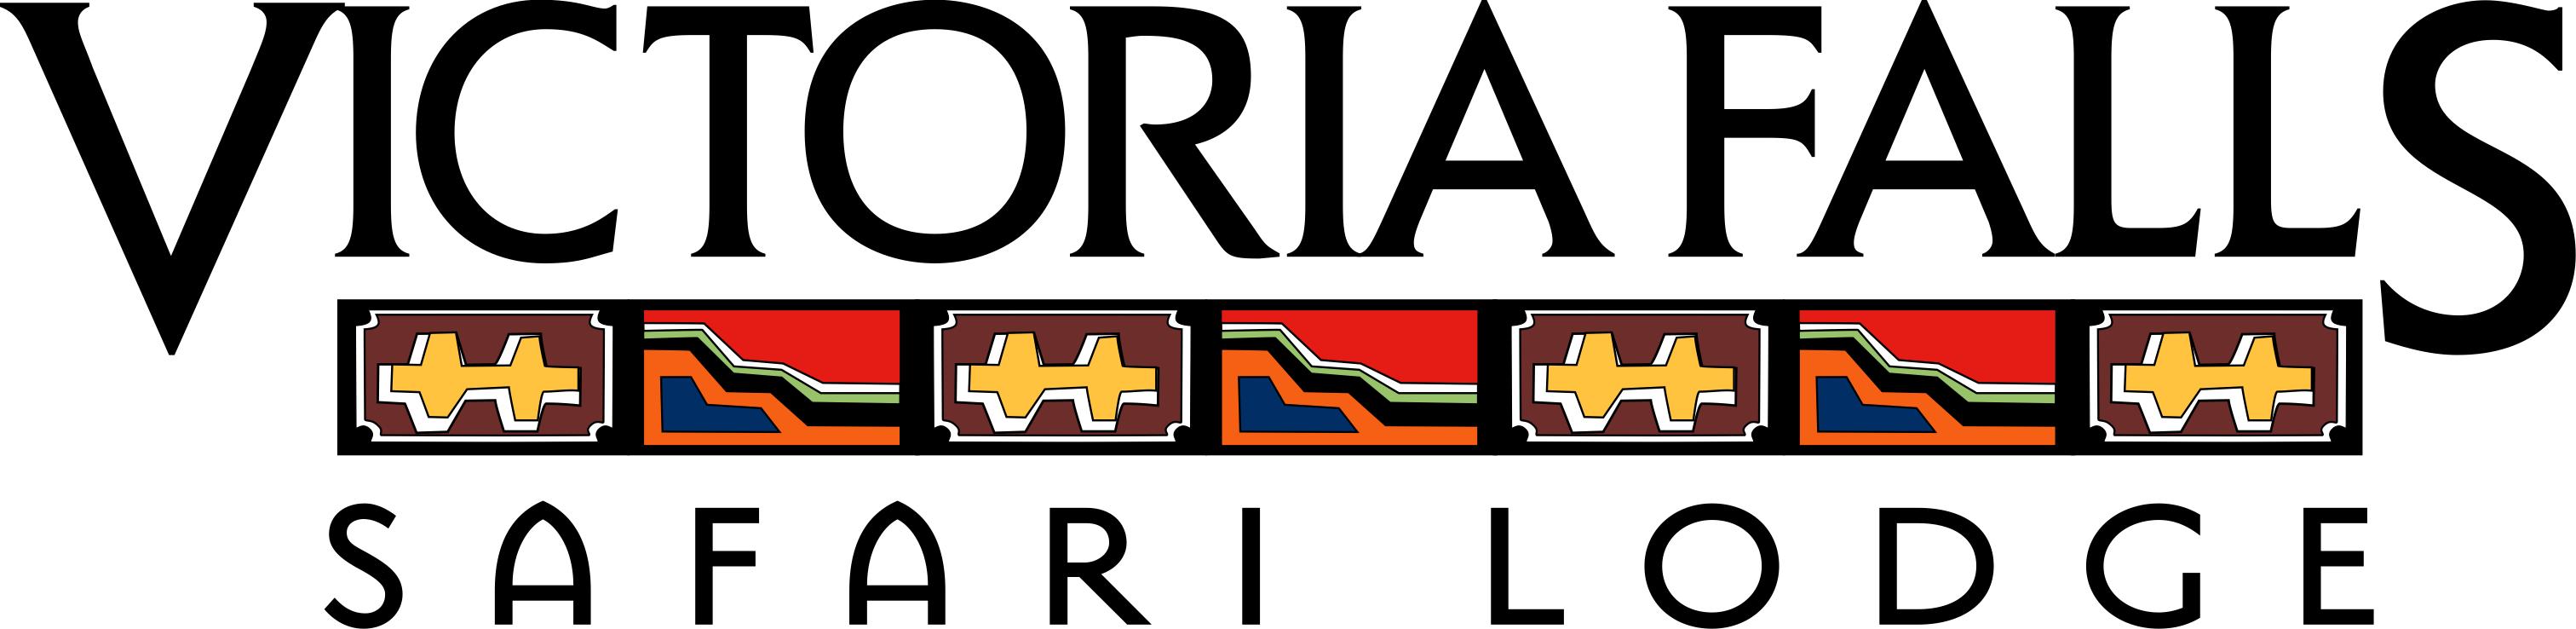 Image result for victoria falls safari lodge logo